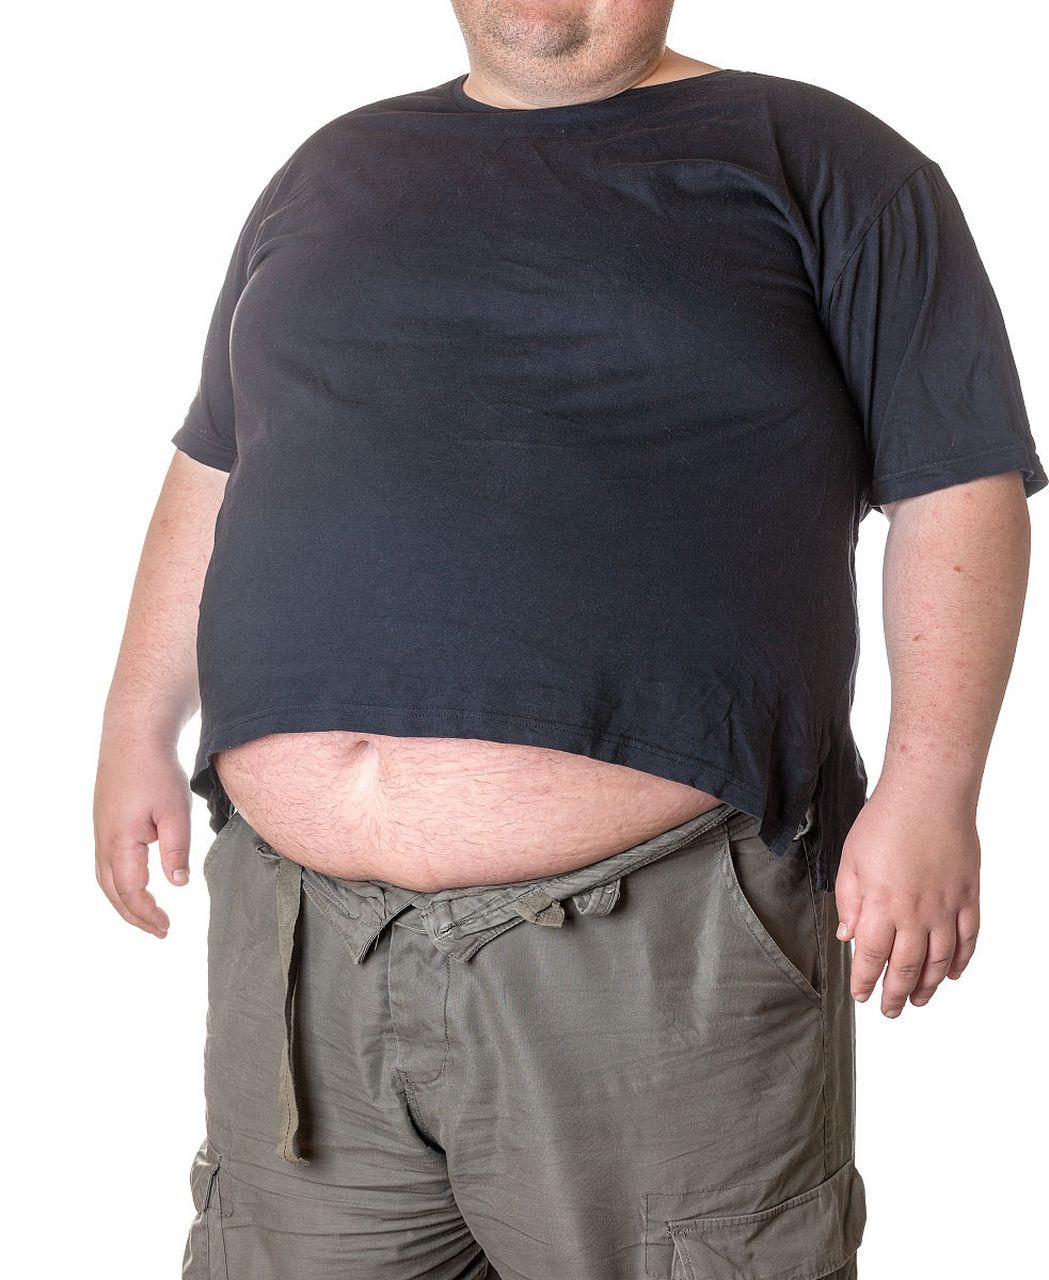 大肚腩照片男性图片